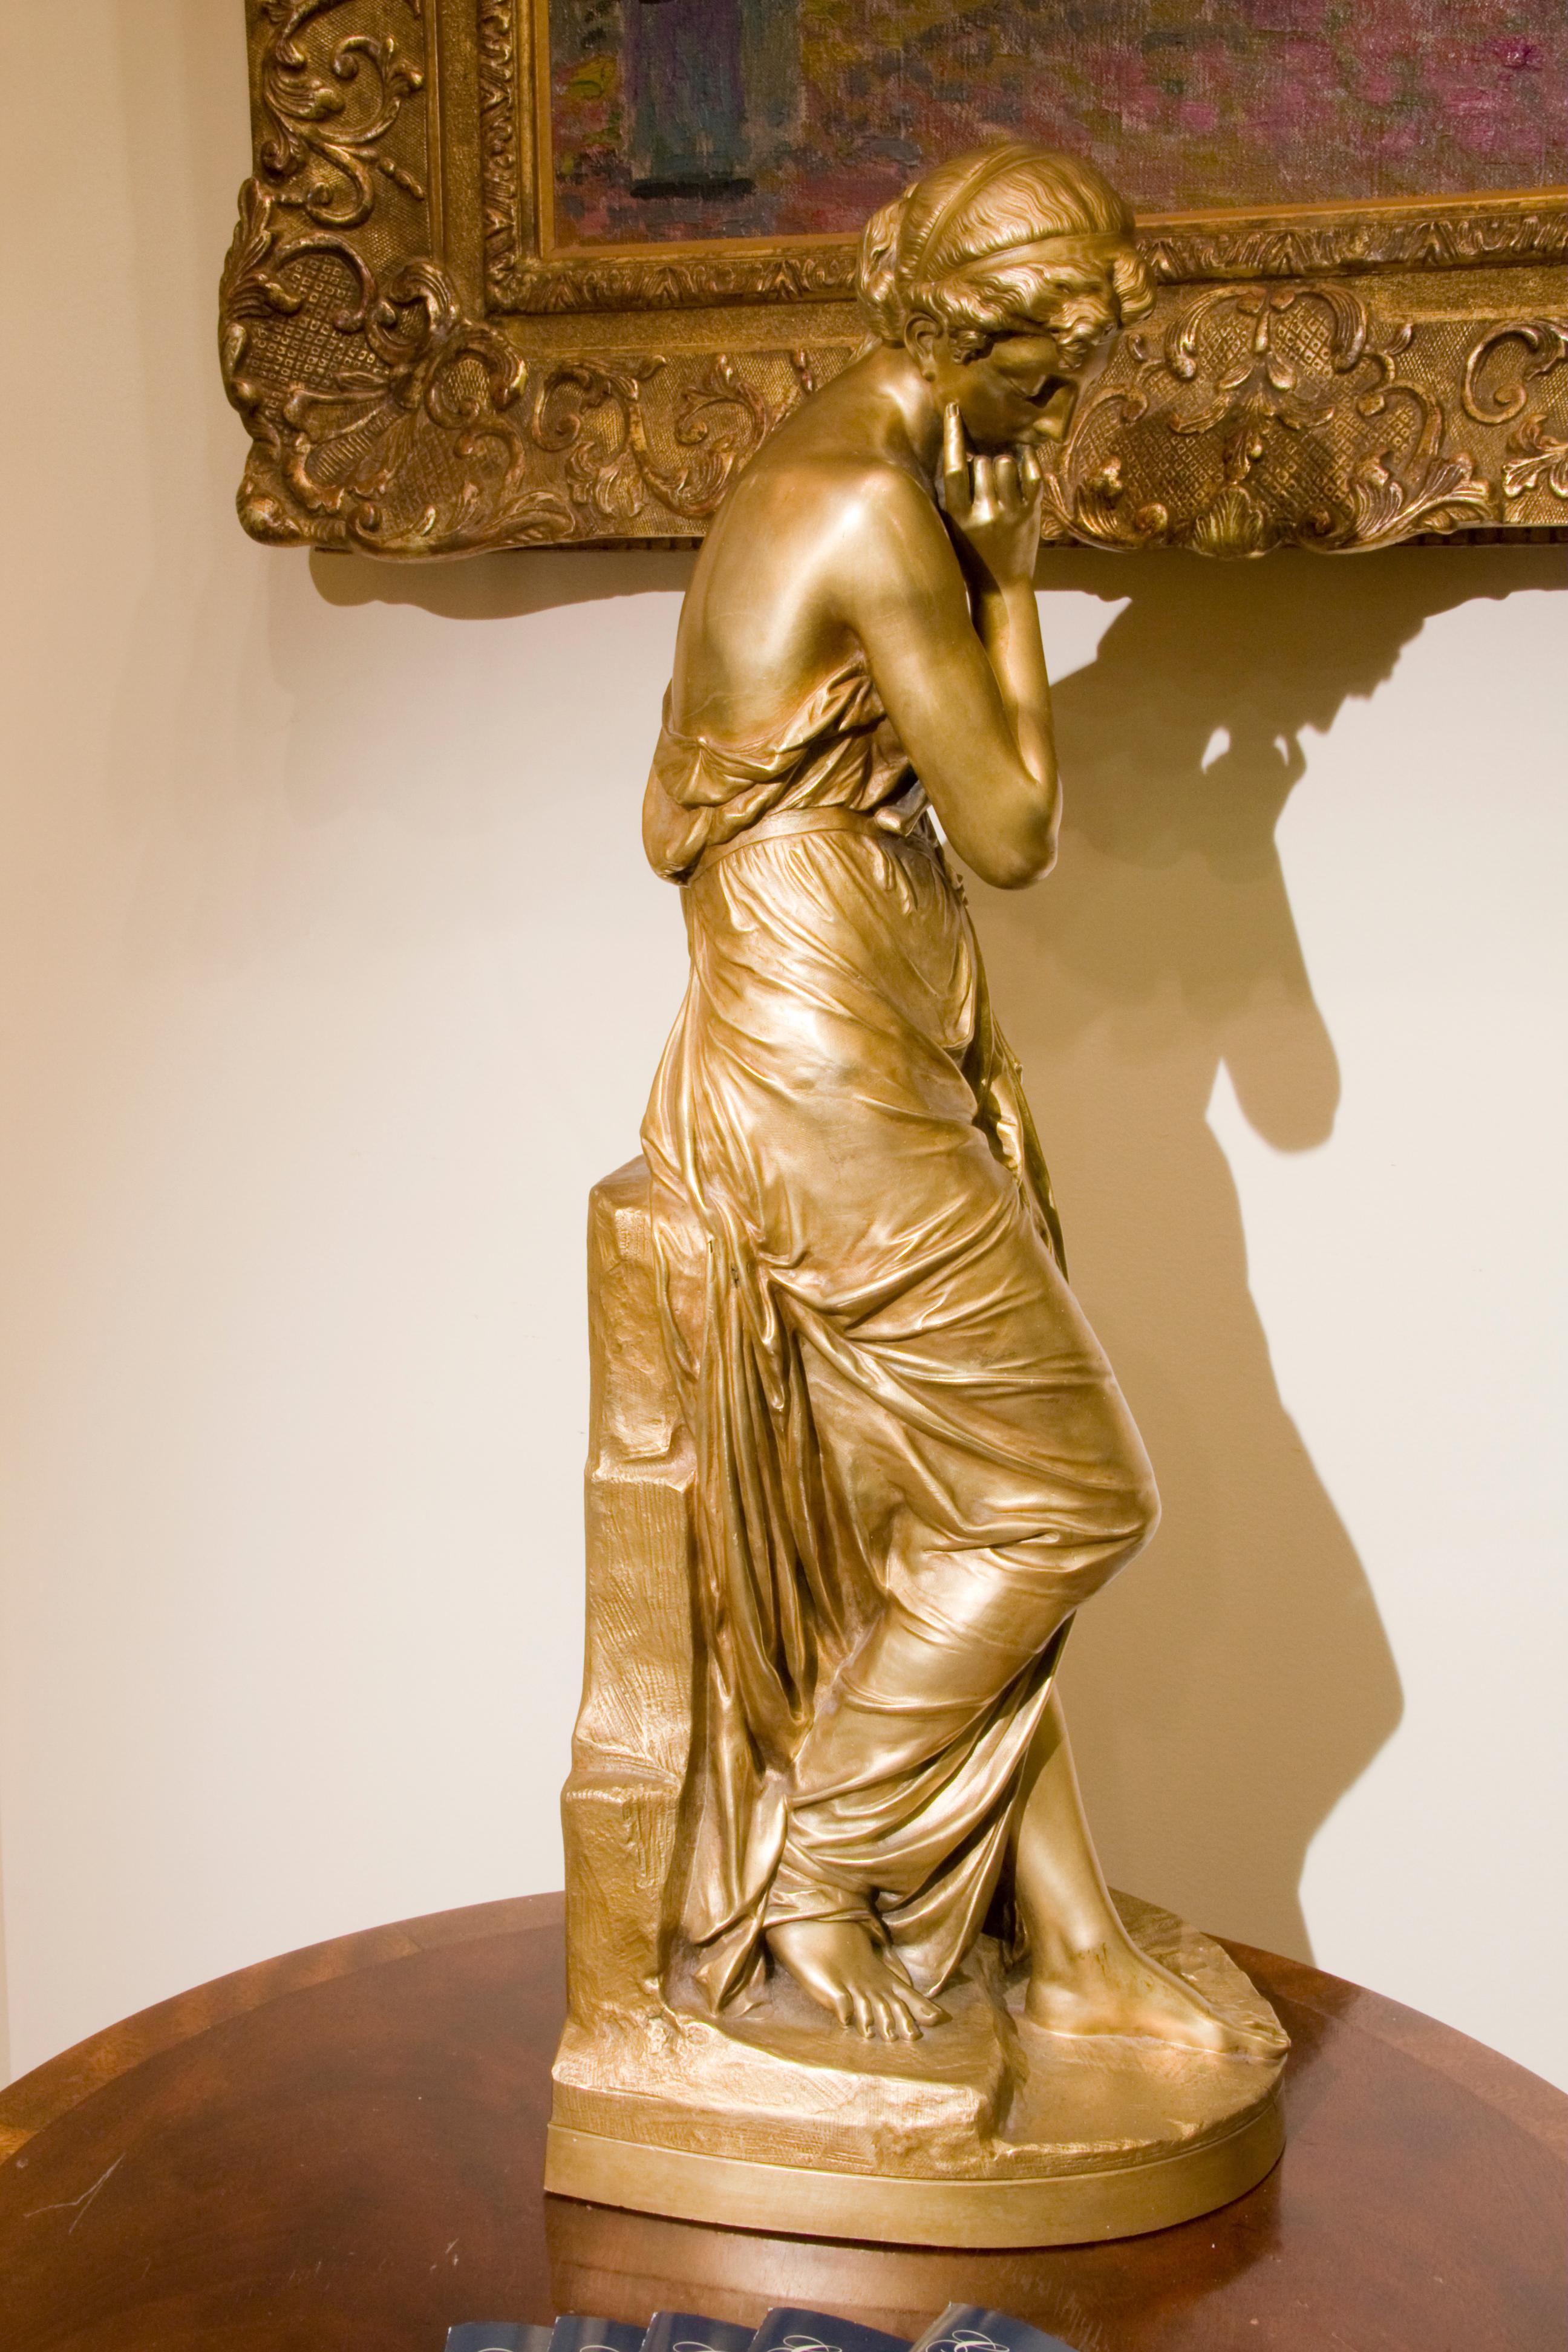 Nice, 19th-century gilt bronze cast by Emile Francois Carlier

Exhibited: 
Salon, Société des Artistes Français, Paris, 1865 (another cast)
Salon, Société des Artistes Français, Paris, 1868 (marble) 
